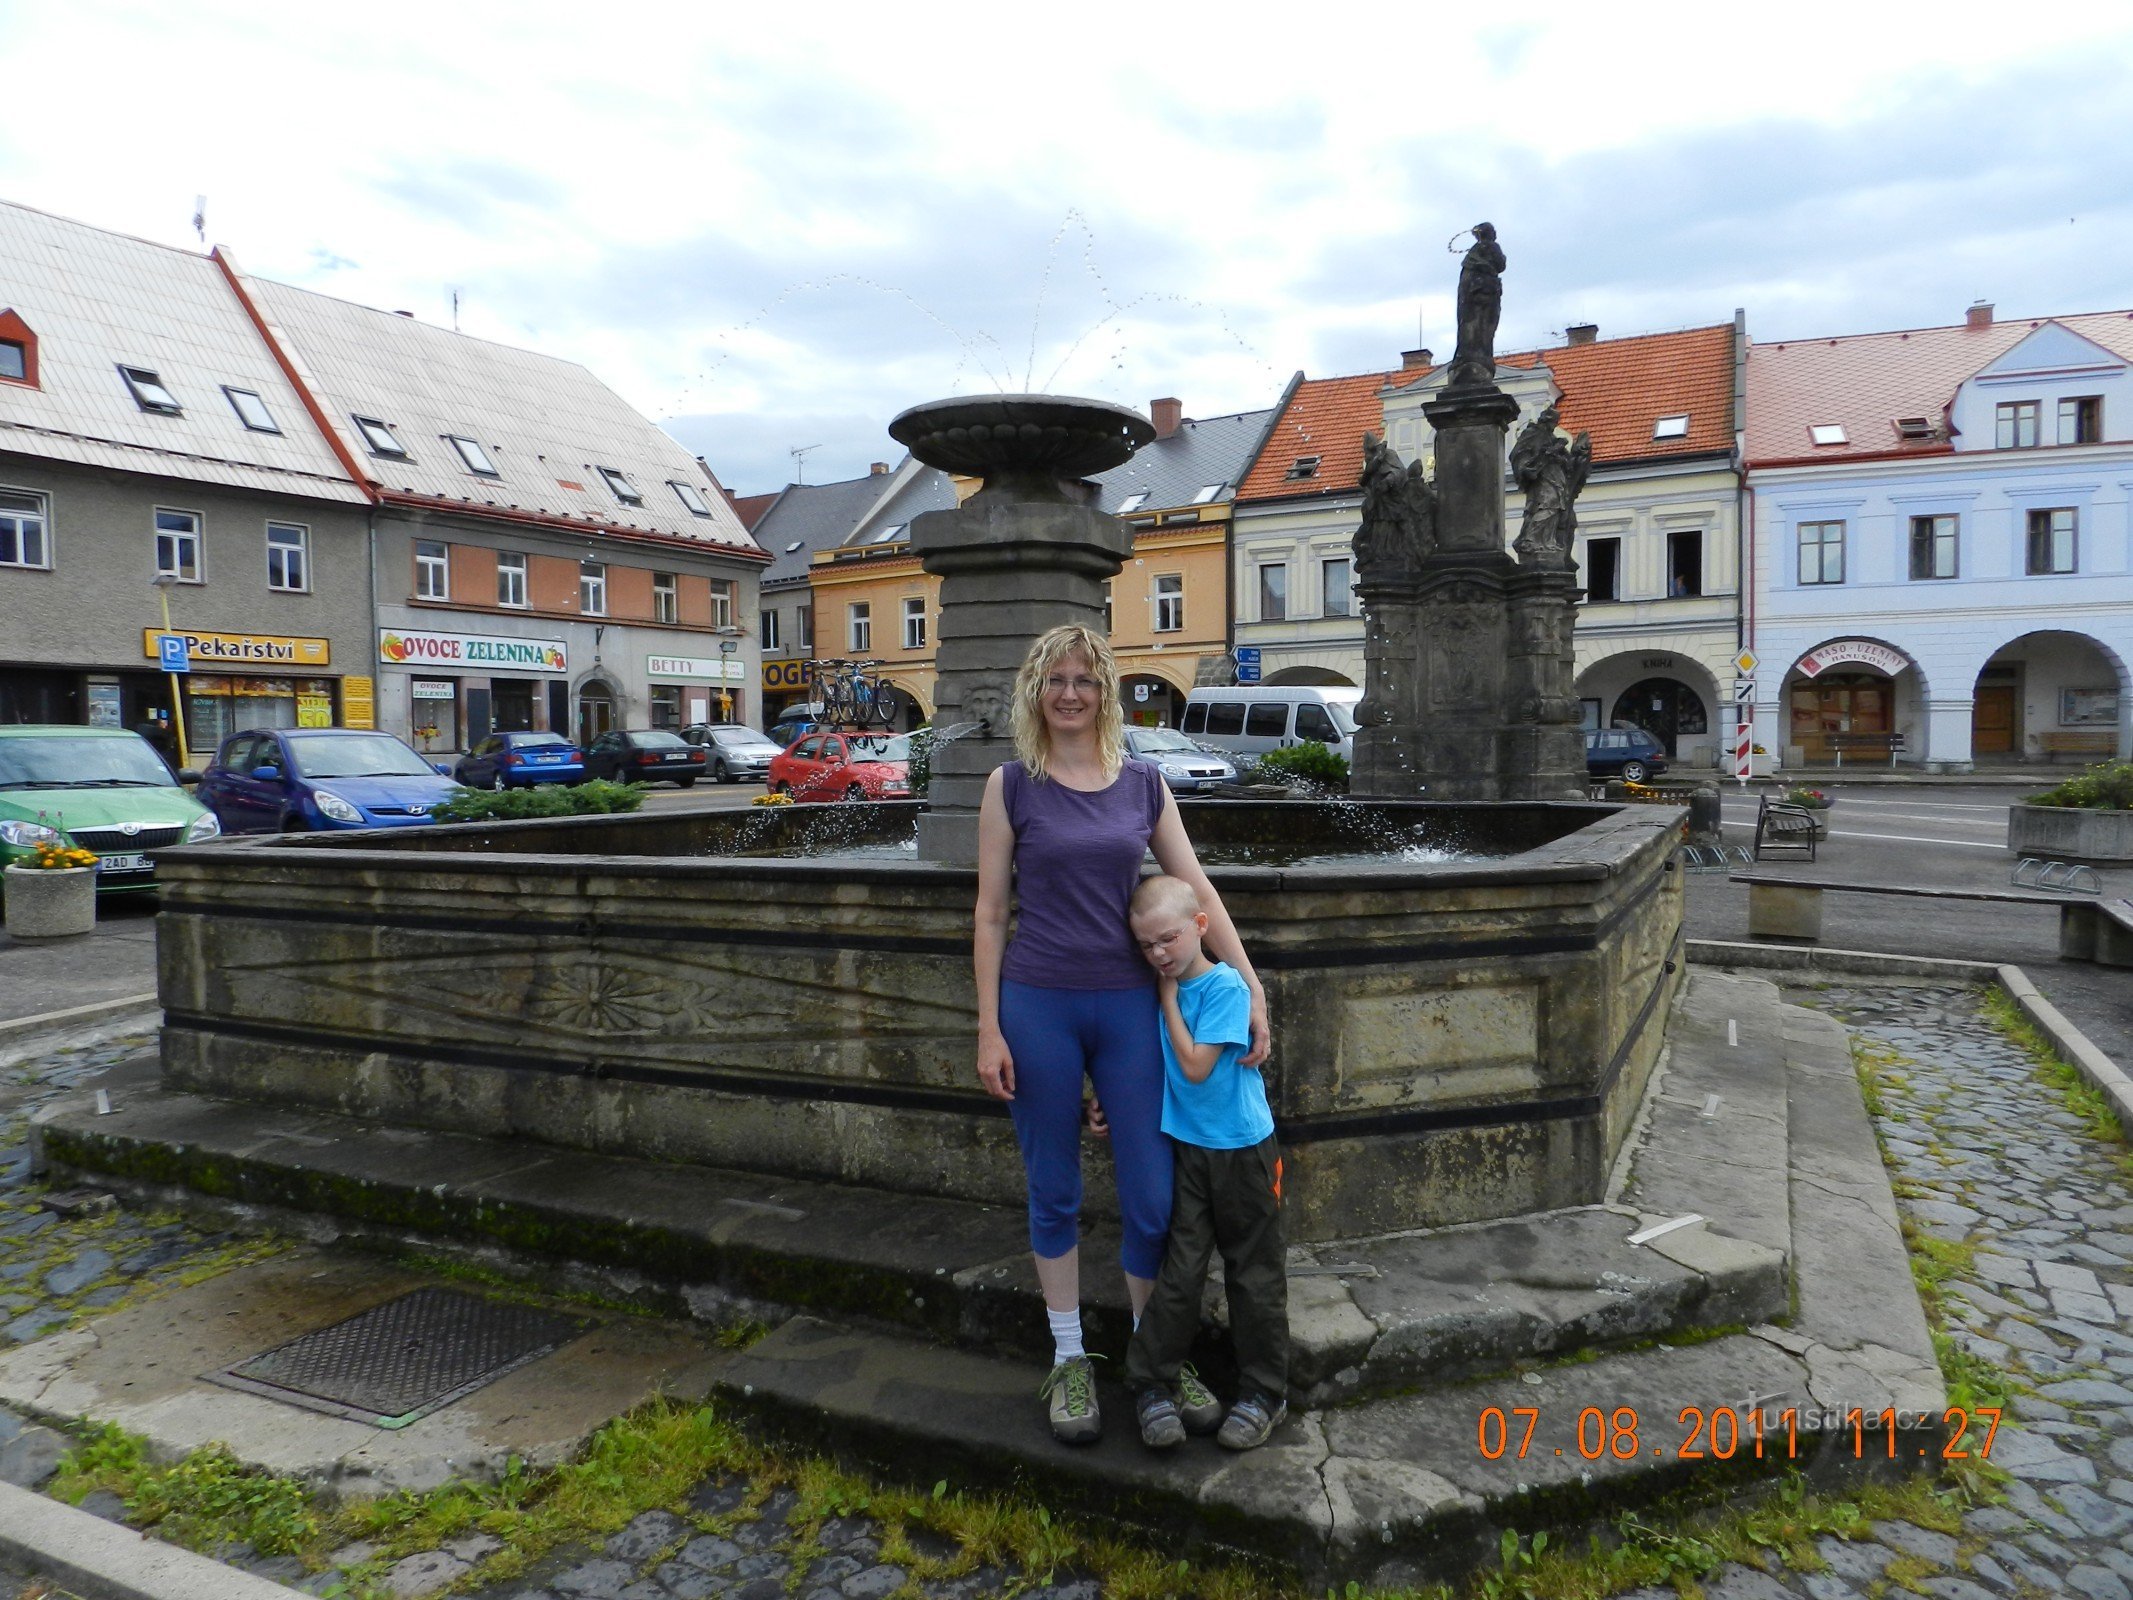 em frente à fonte em Sobotka na praça